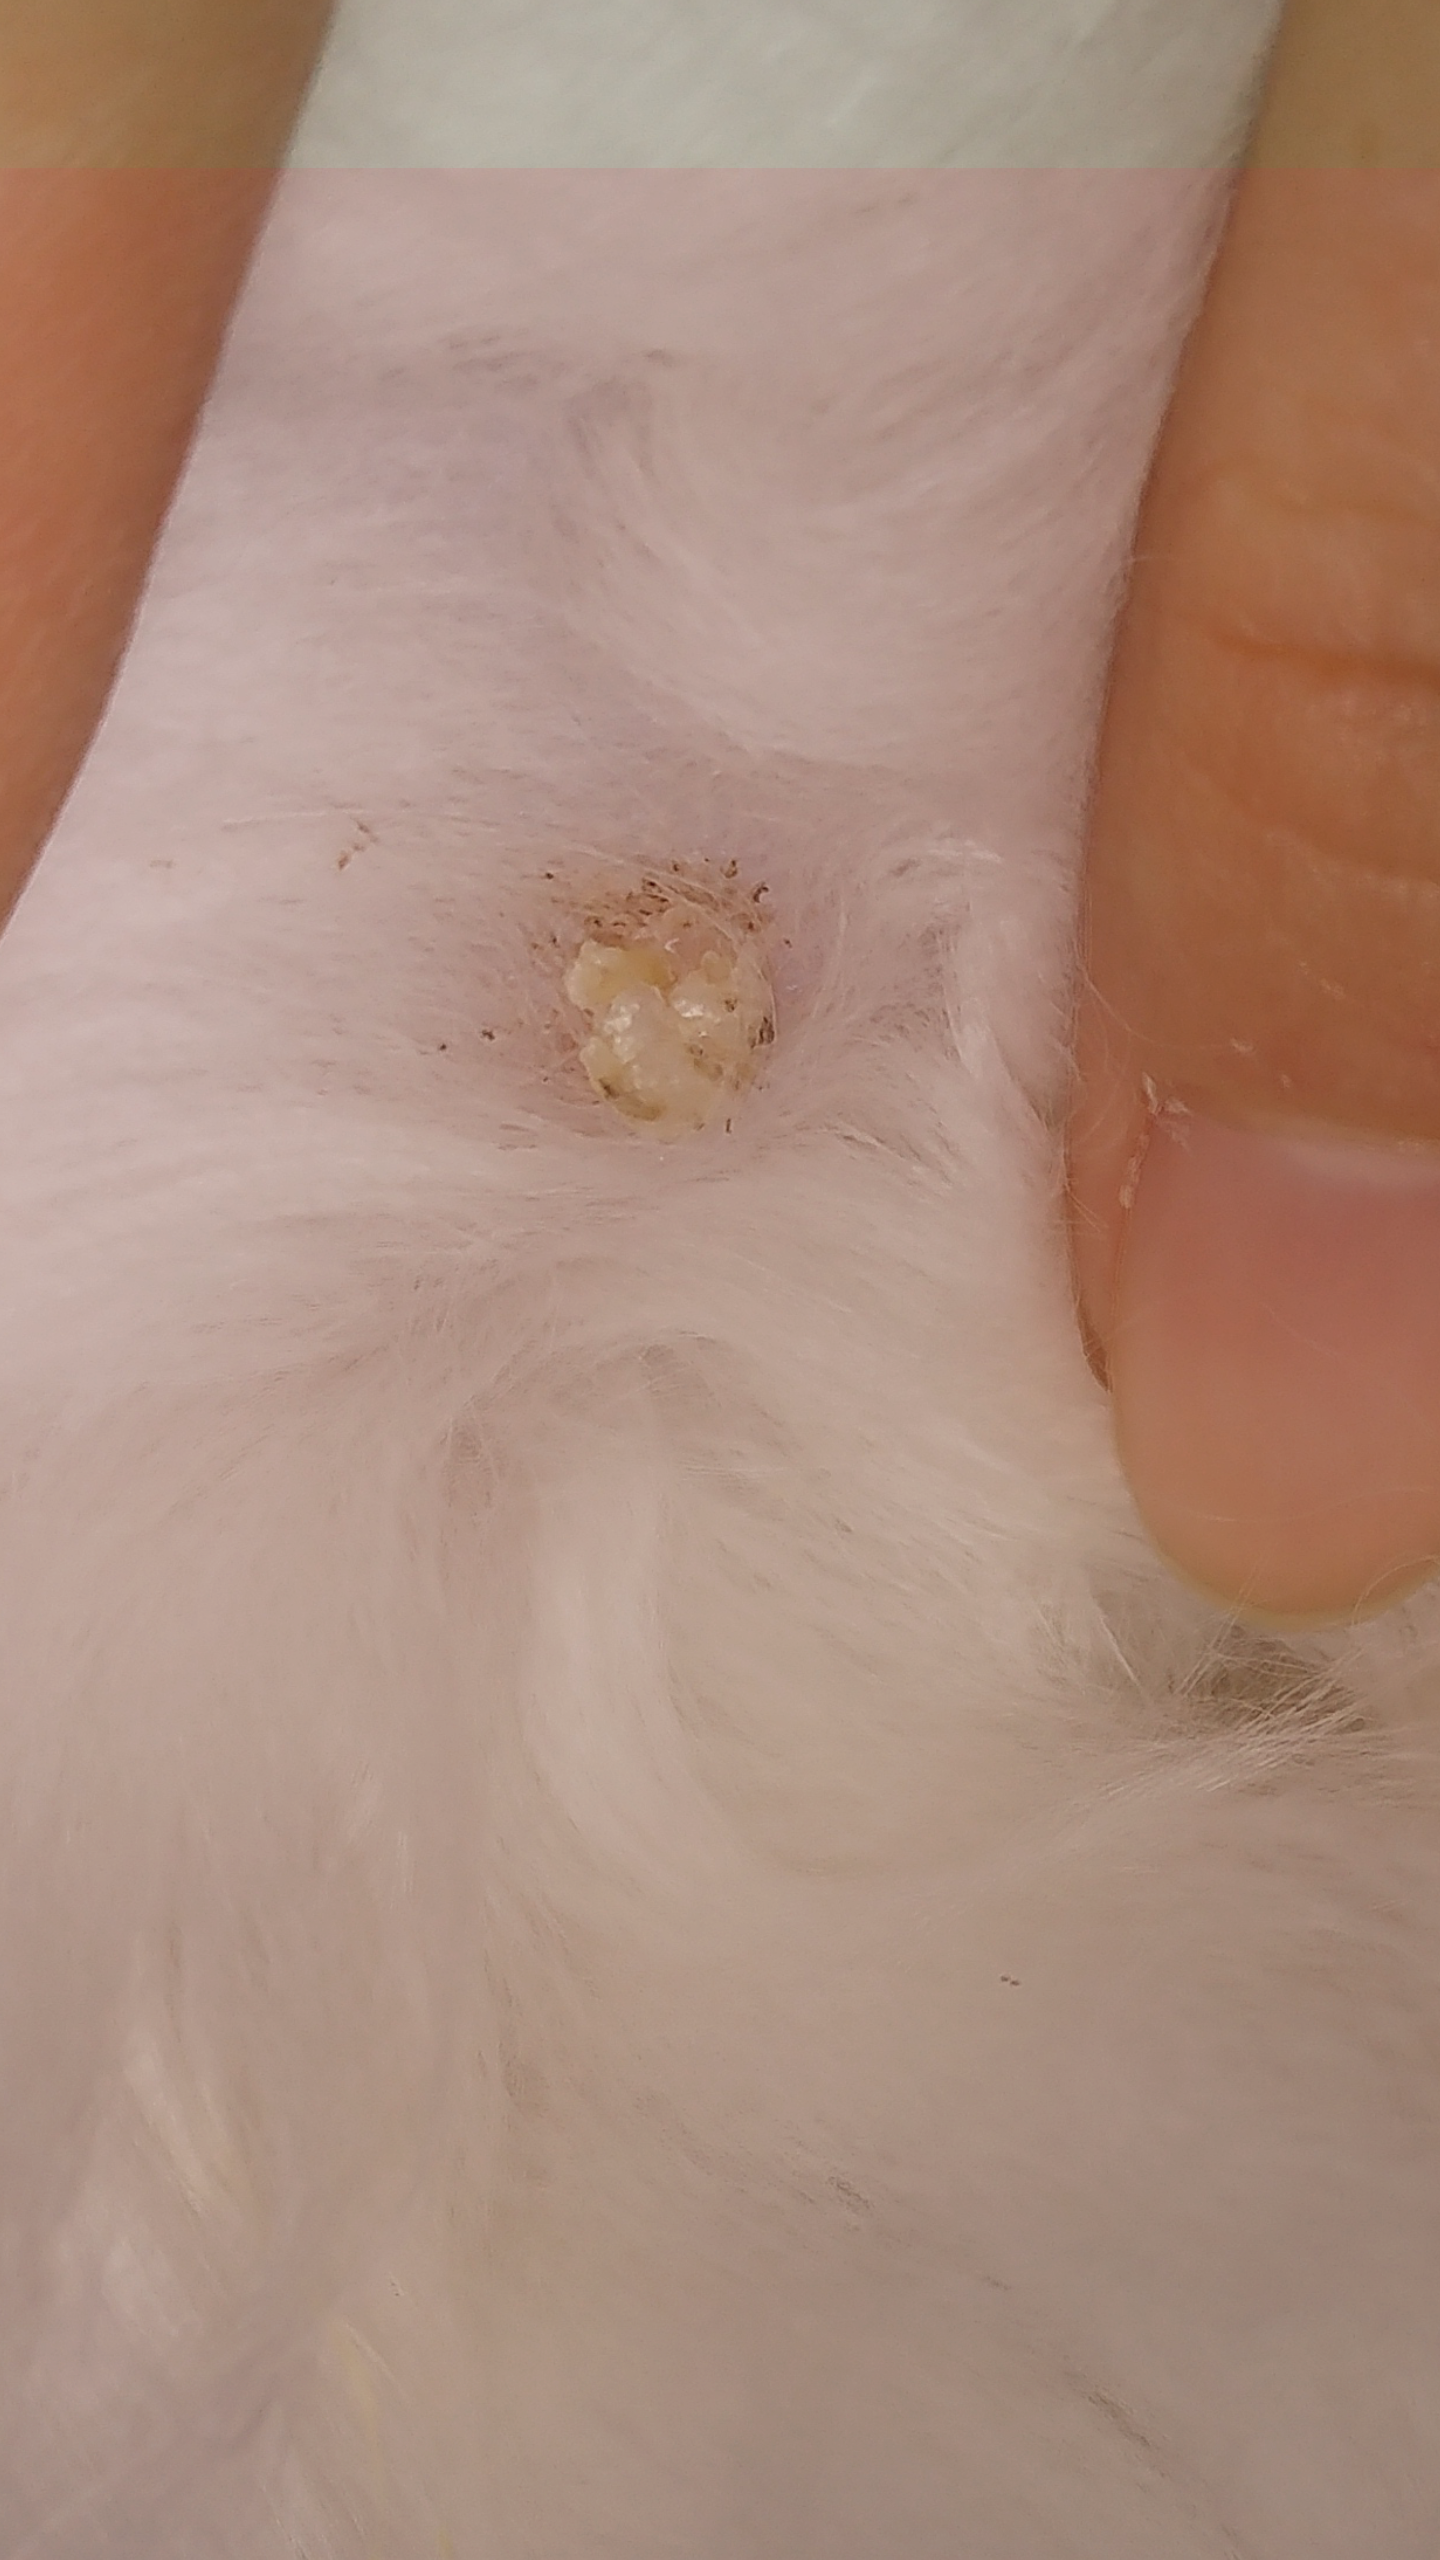 猫猫屁屁,菊花下面靠近腿根的地方有个白色的硬块.